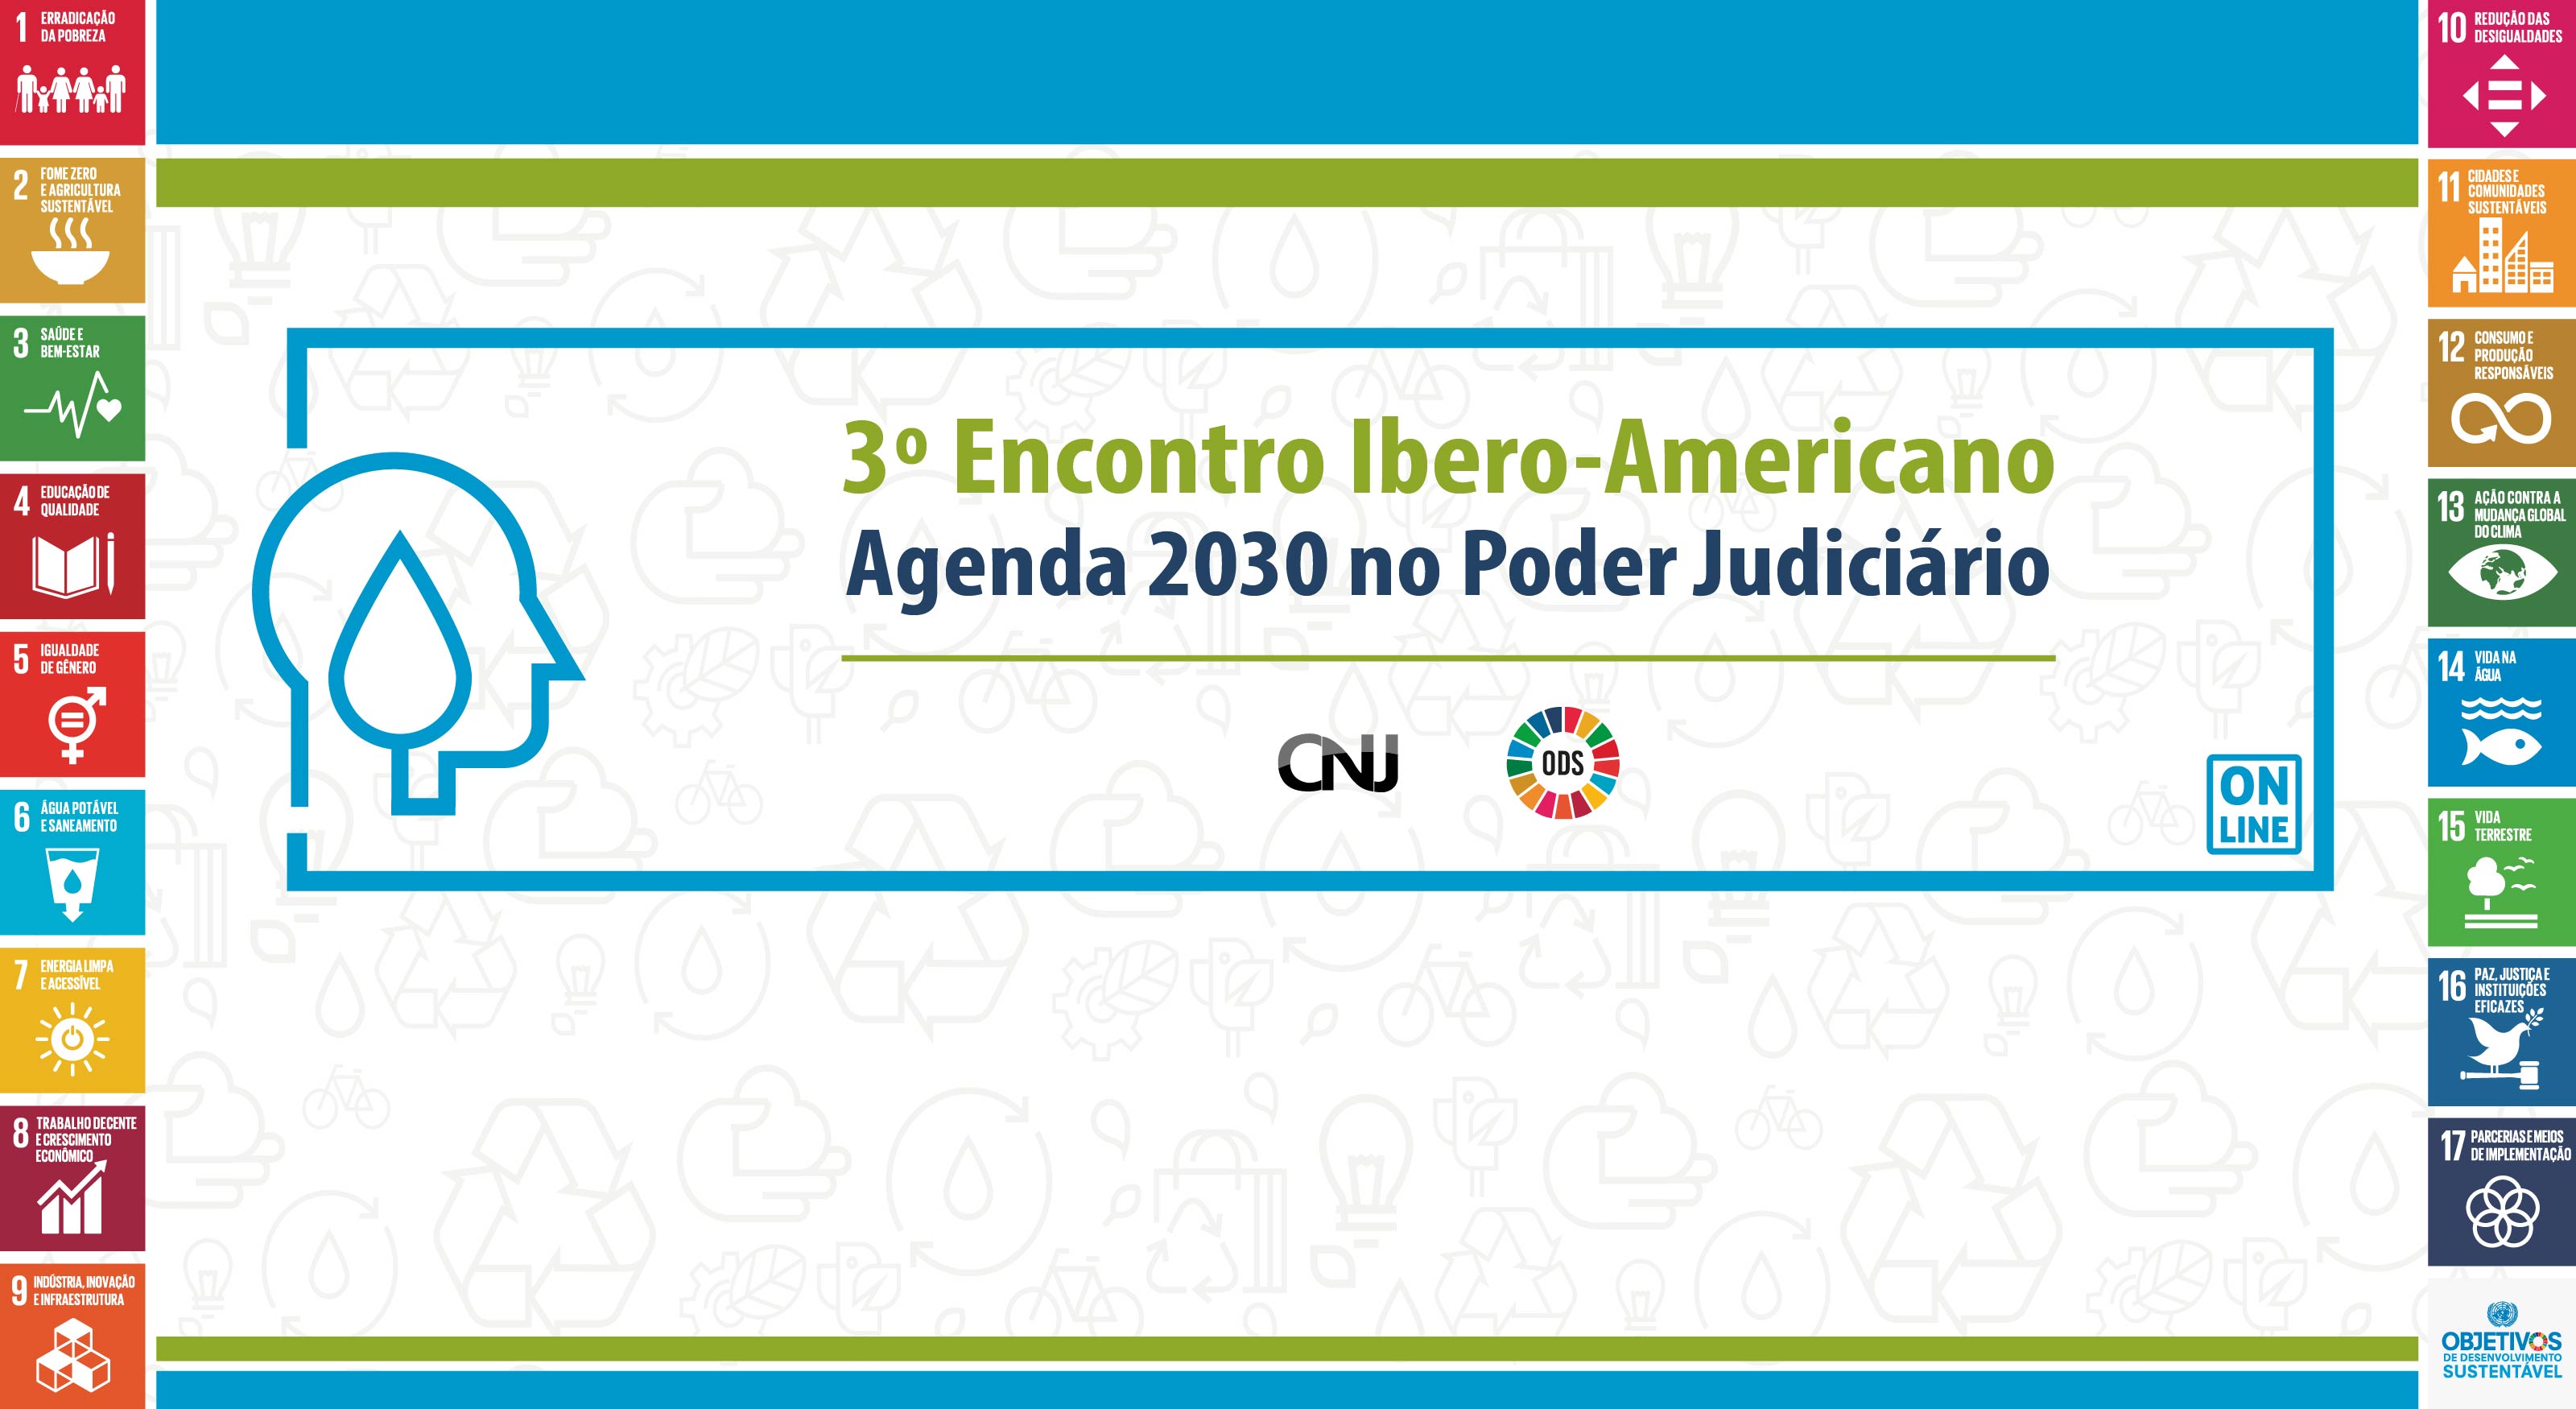 INSTITUCIONAL: Encontro Ibero-Americano debate Agenda 2030 no âmbito do Poder Judiciário